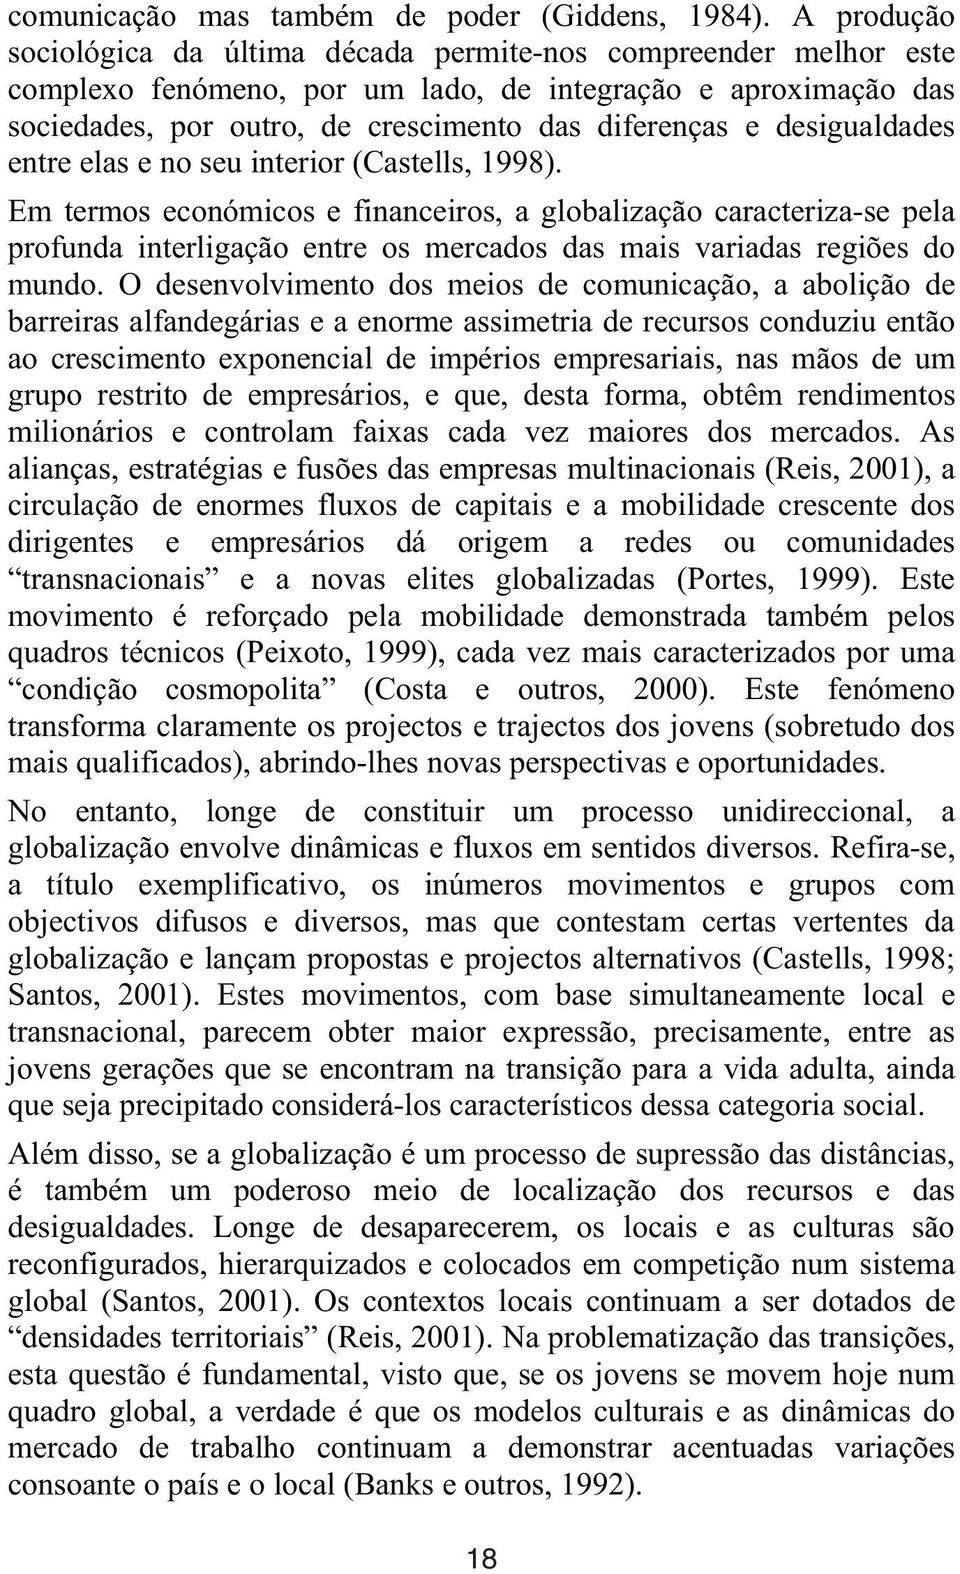 desigualdades entre elas e no seu interior (Castells, 1998).